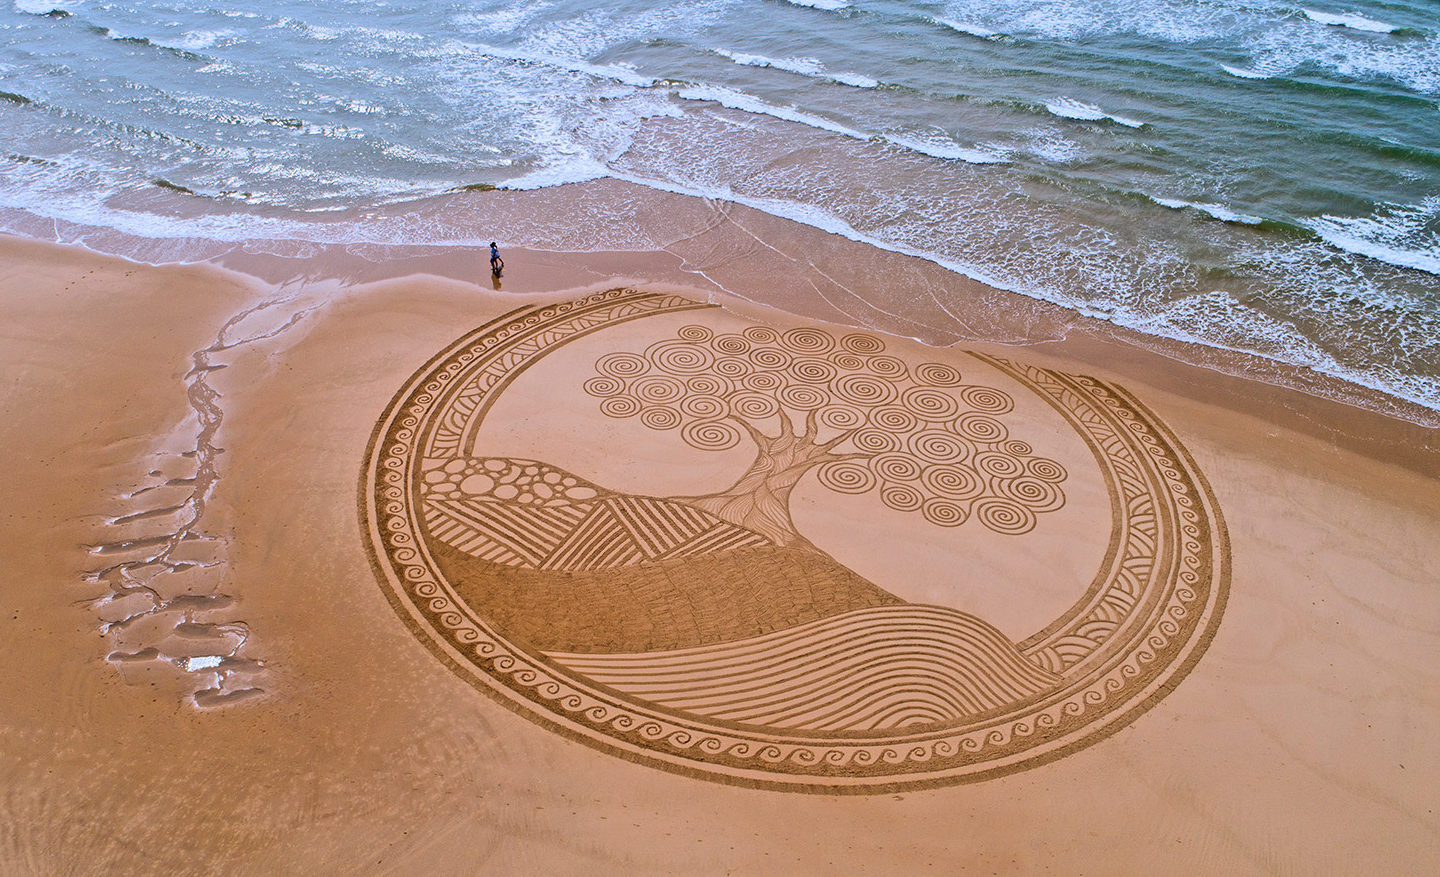 Comment les « beach artists » transforment la plage en véritable œuvre d'art